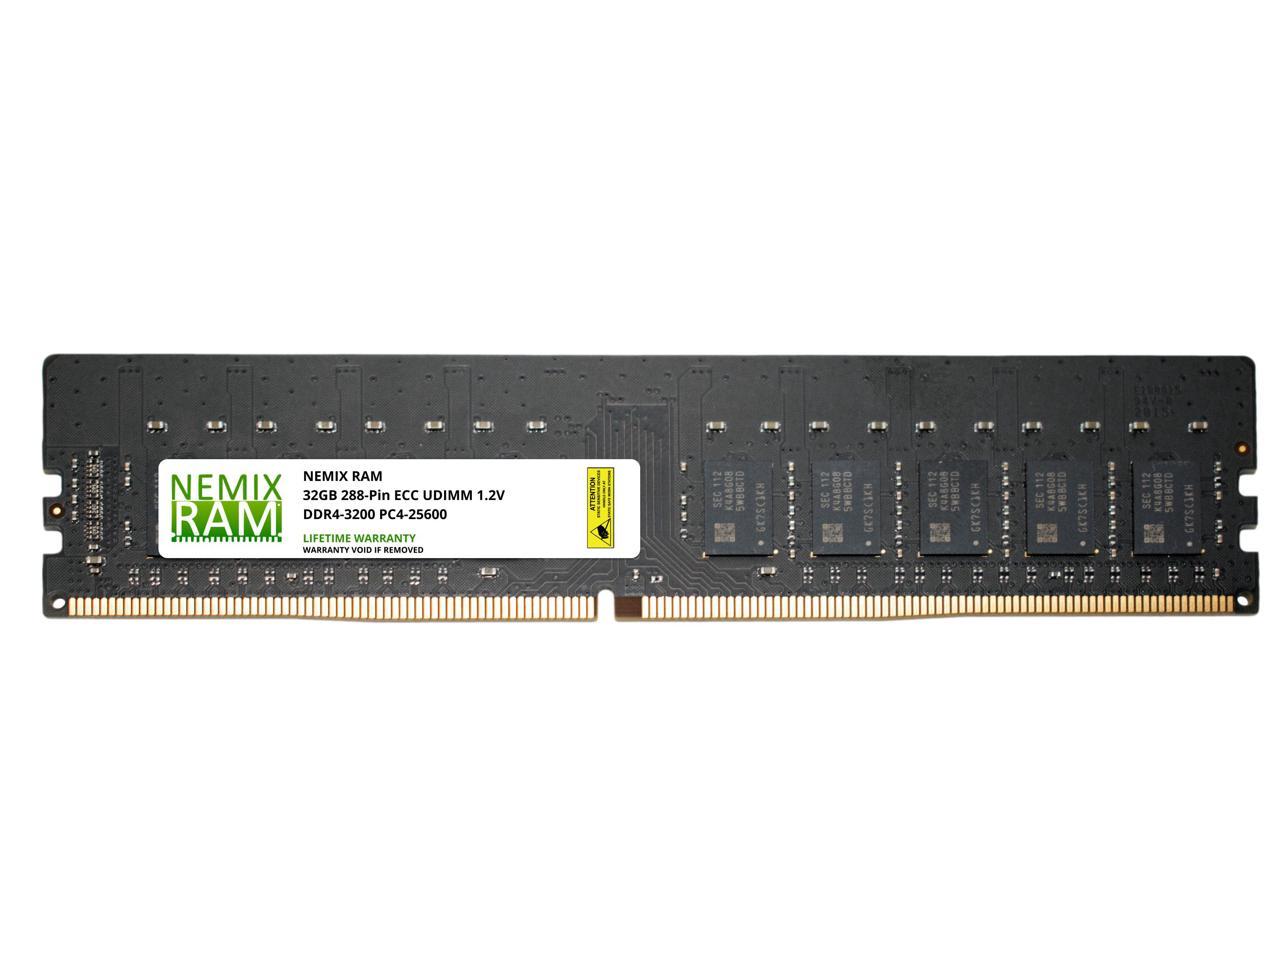 NEMIX RAM 32GB DDR4-3200 PC4-25600 2Rx8 ECC Unbuffered